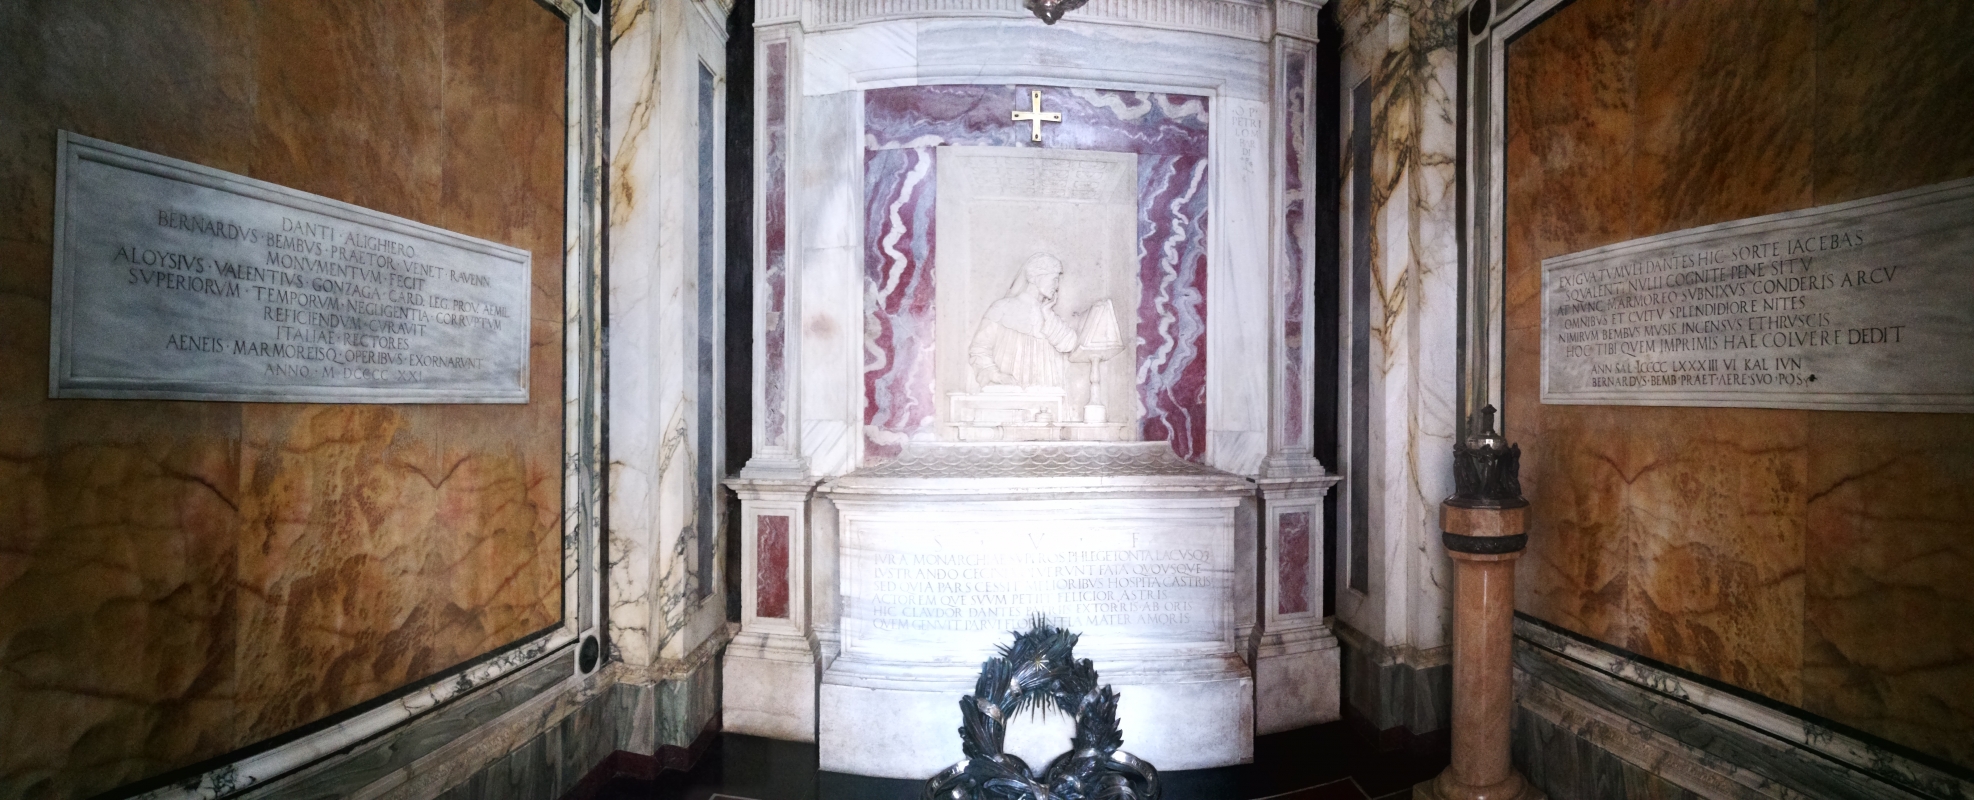 Tomba di Dante - panoramica interno - LadyBathory1974